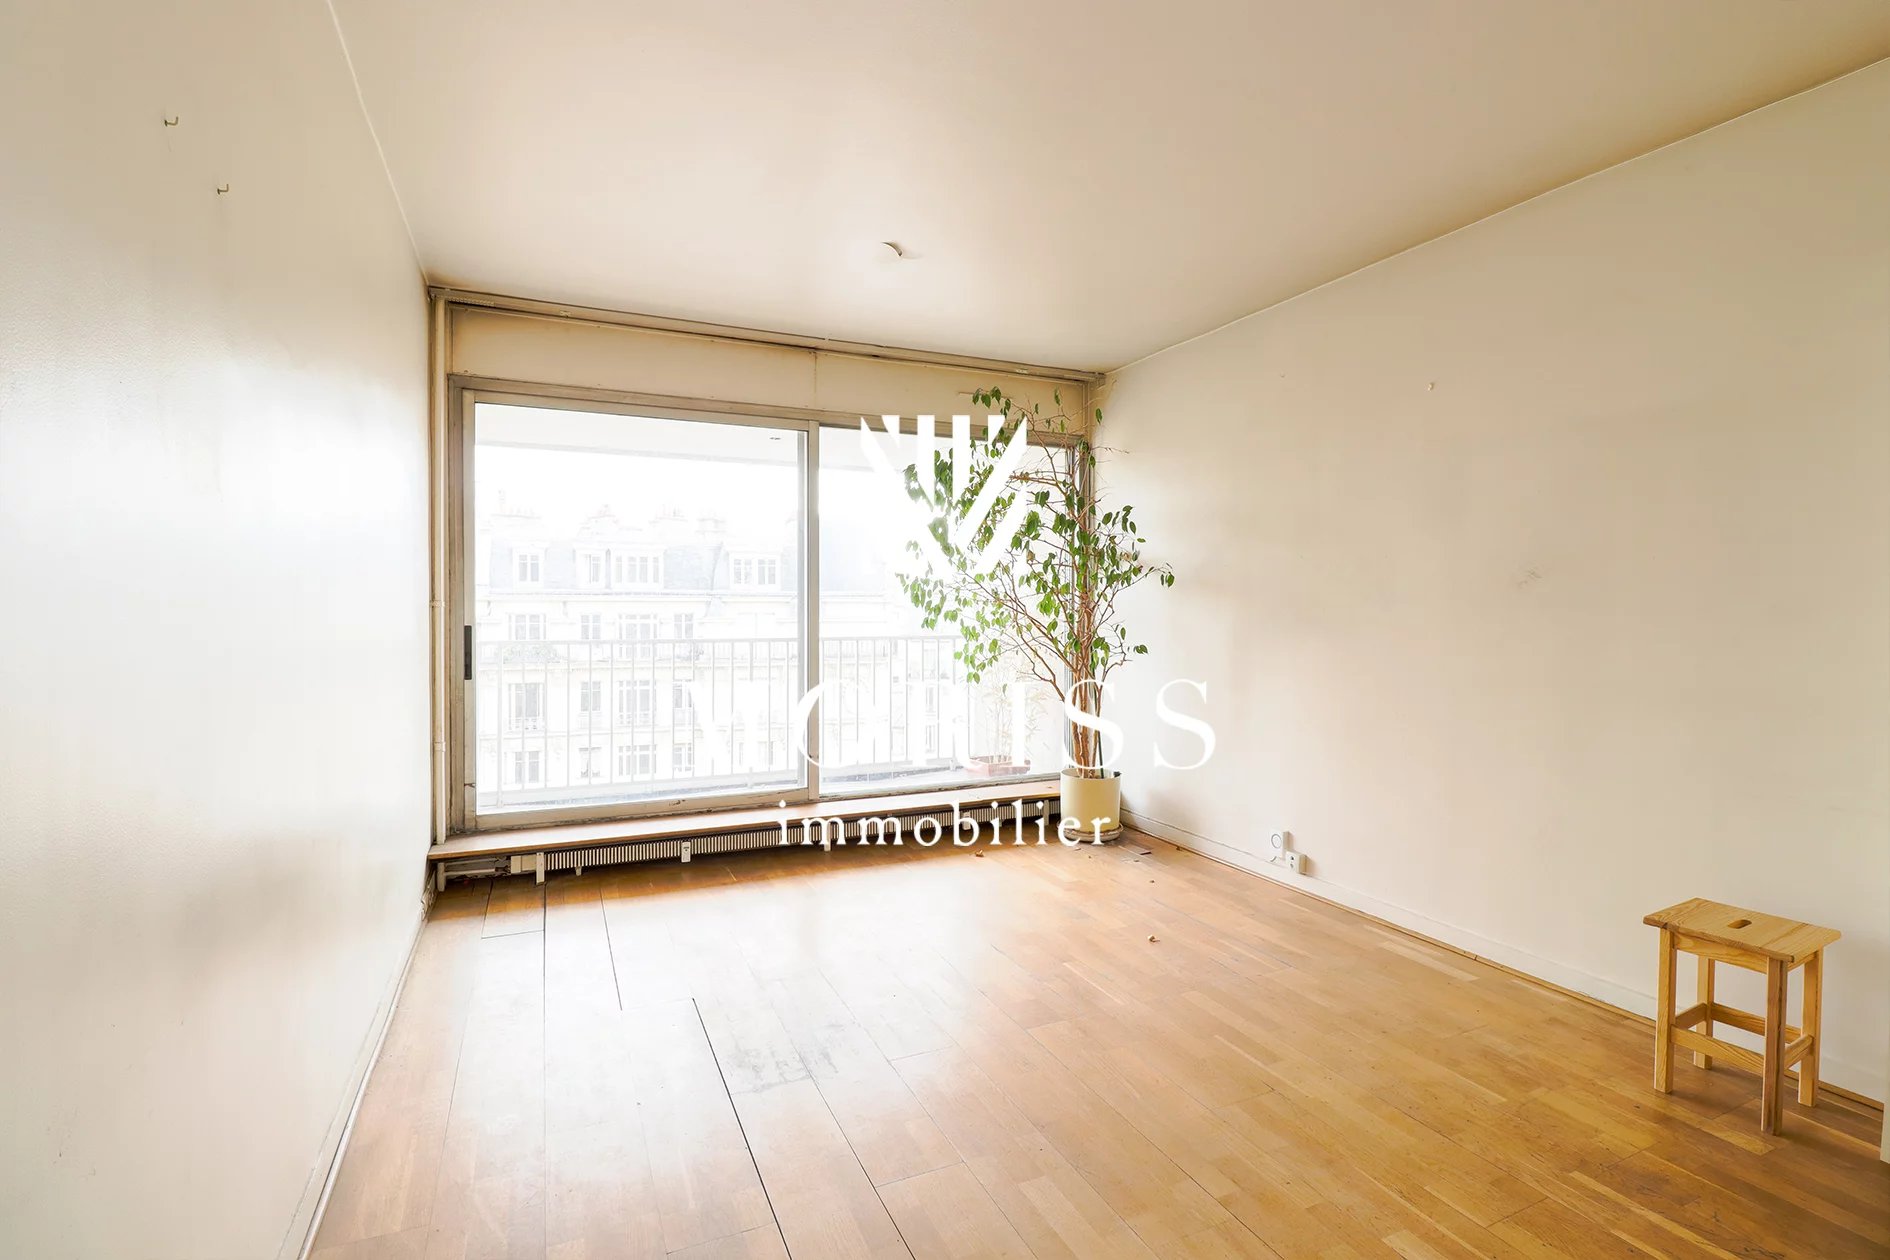 Bel appartement 3 pièces, vue dégagée avec balcon rue du Faubour - Image 1